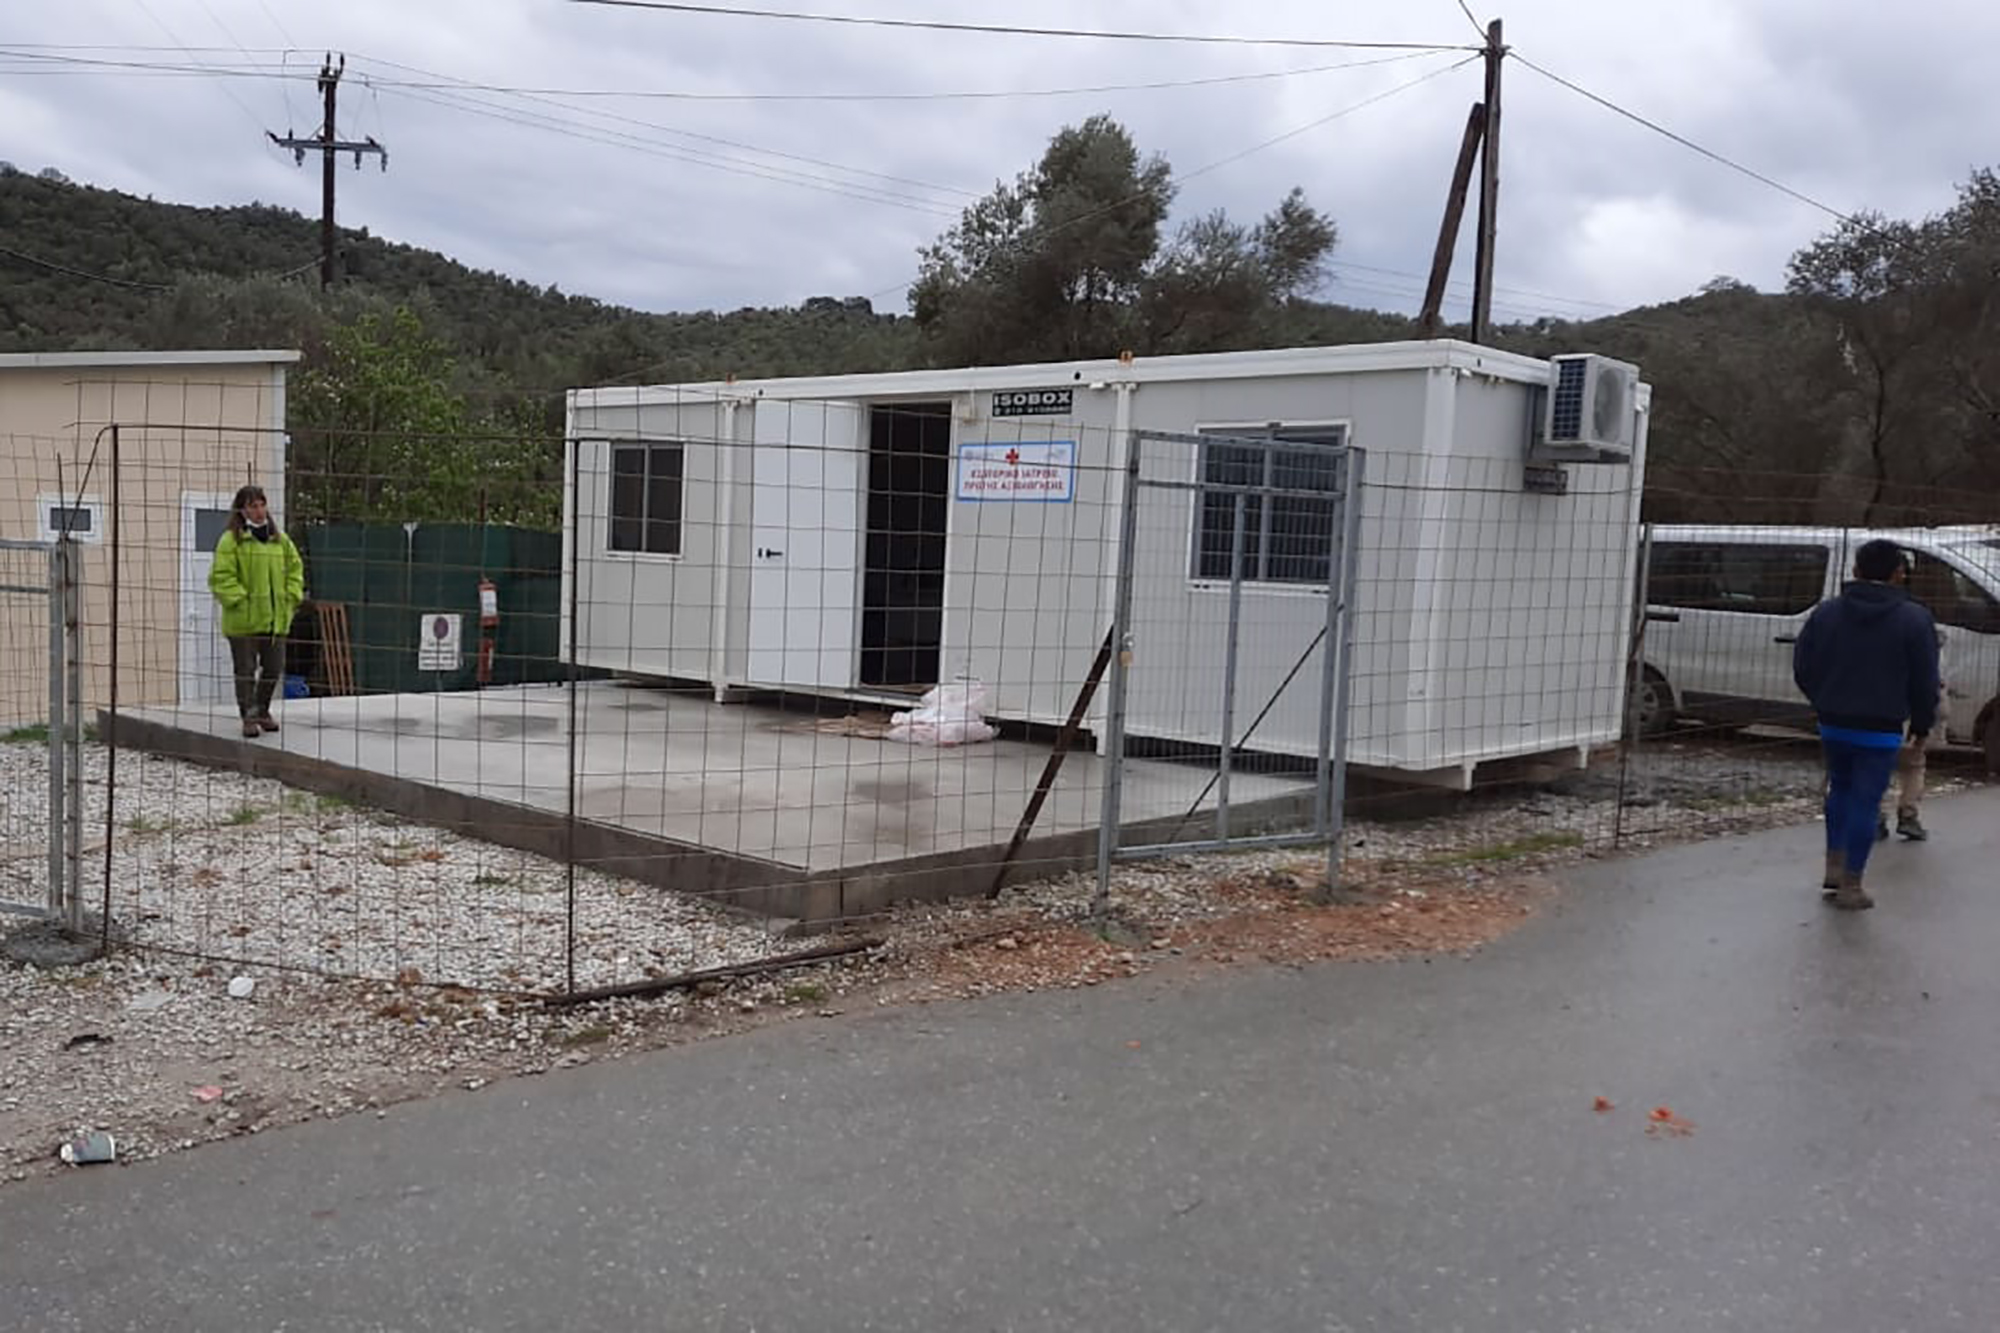 Unidade instalada no campo de Mória, em Lesbos, para dar resposta aos primeiros casos de infeção por COVID-19. FONTE: Deen Mohammad Alizadah